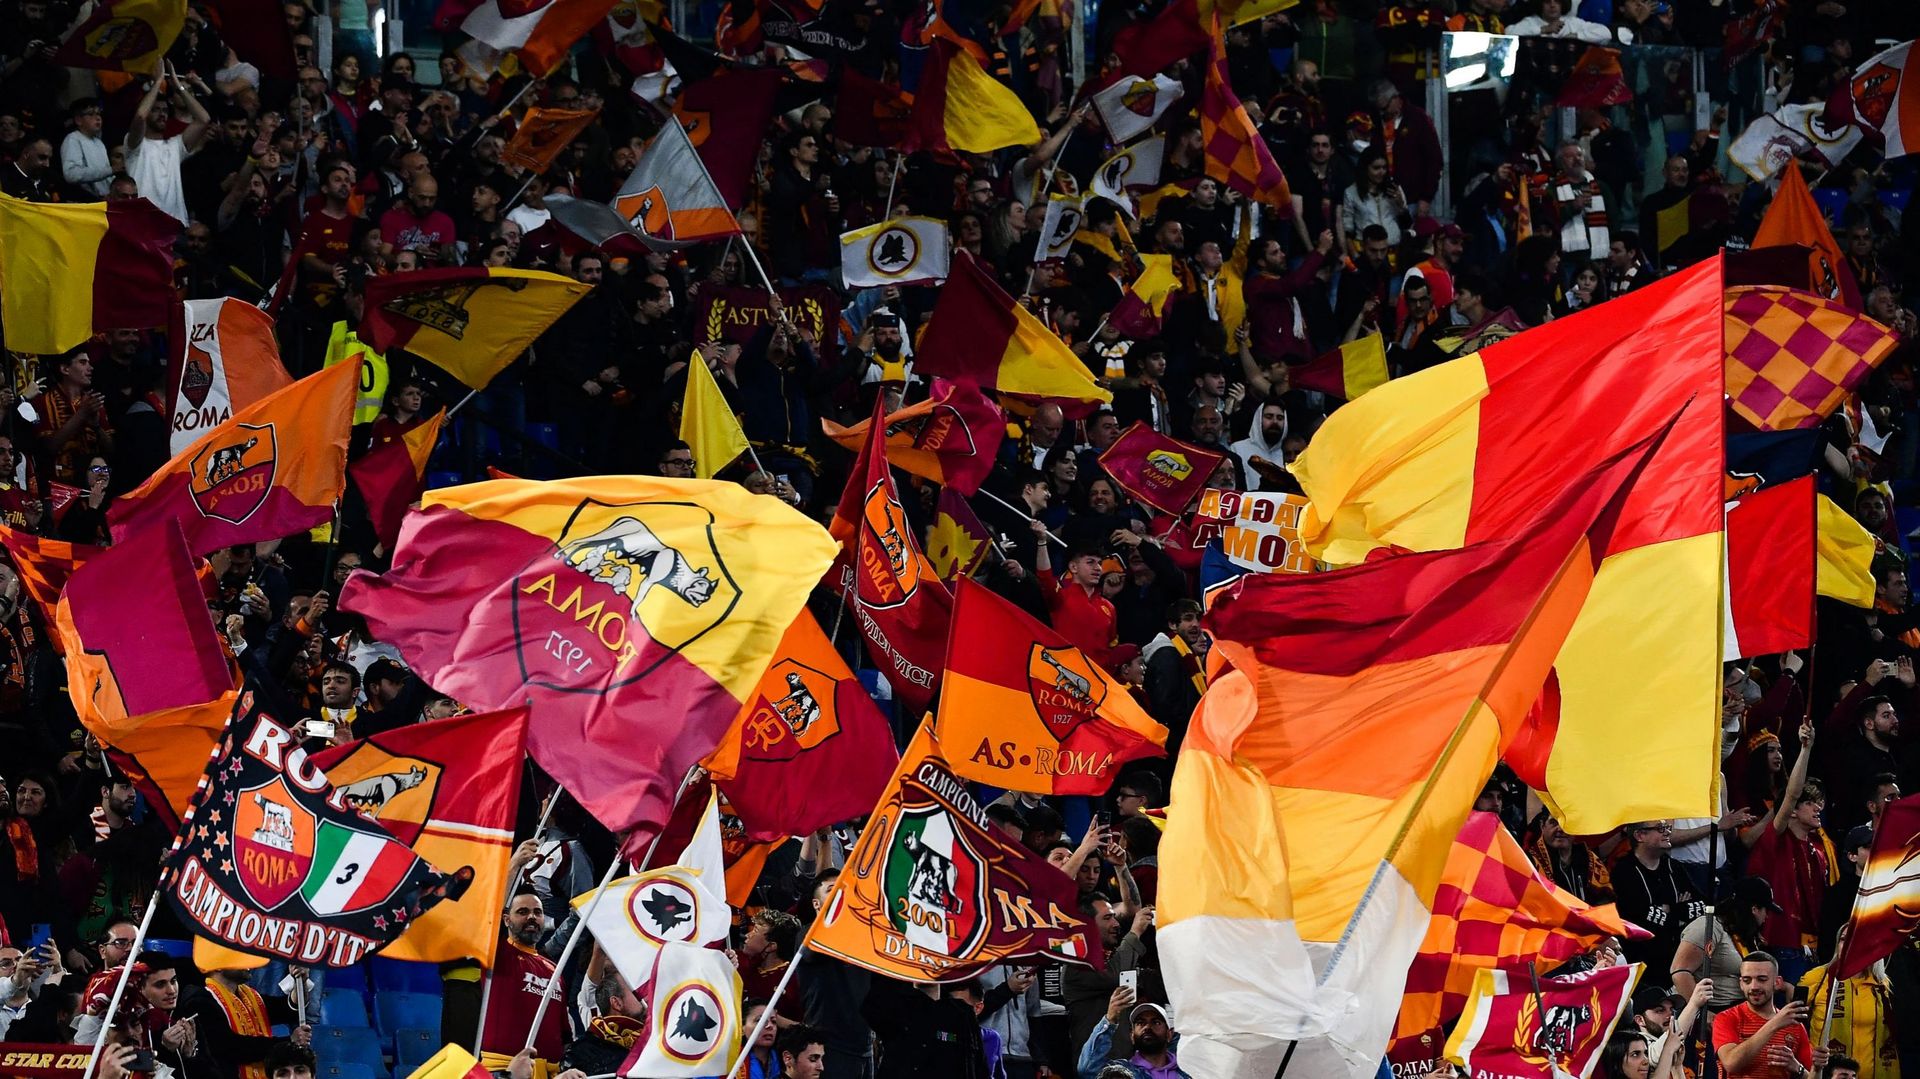 Les supporters de l’AS Roma se réjouissent avant le match retour de la demi-finale de l’UEFA Conference League entre l’AS Roma et Leicester City au Stade Olympique de Rome.